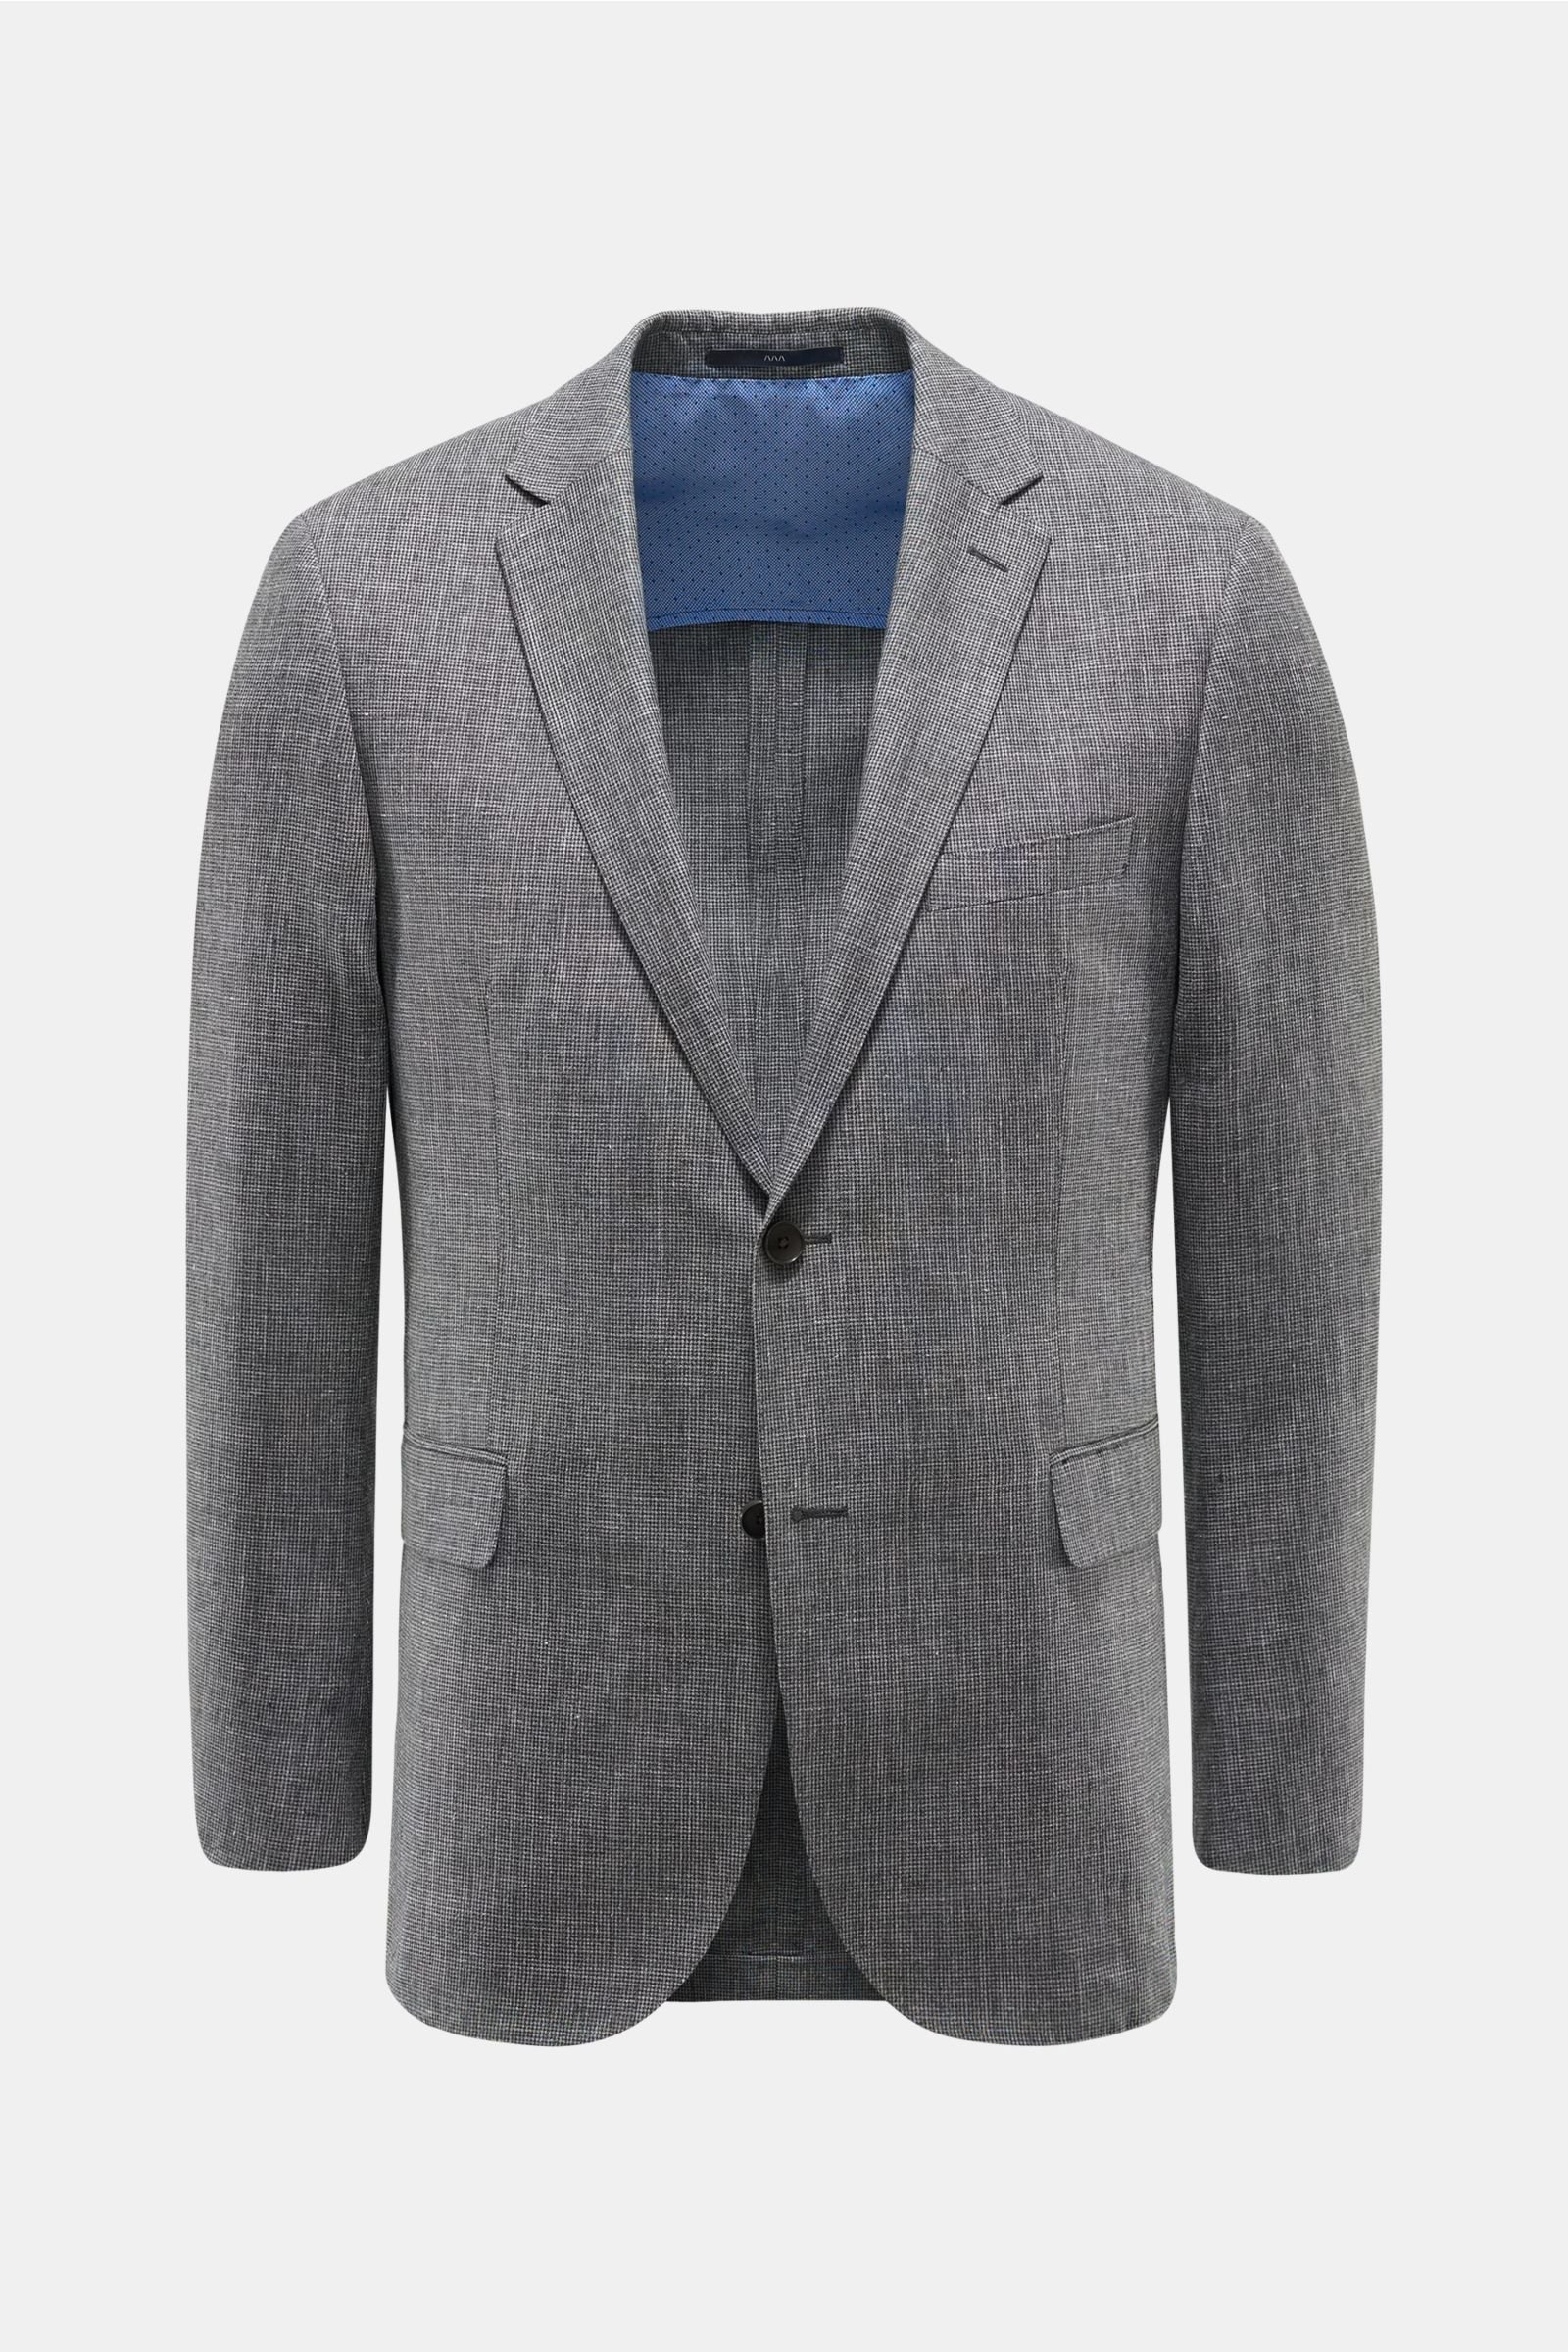 Smart-casual jacket 'Sean' dark grey checked